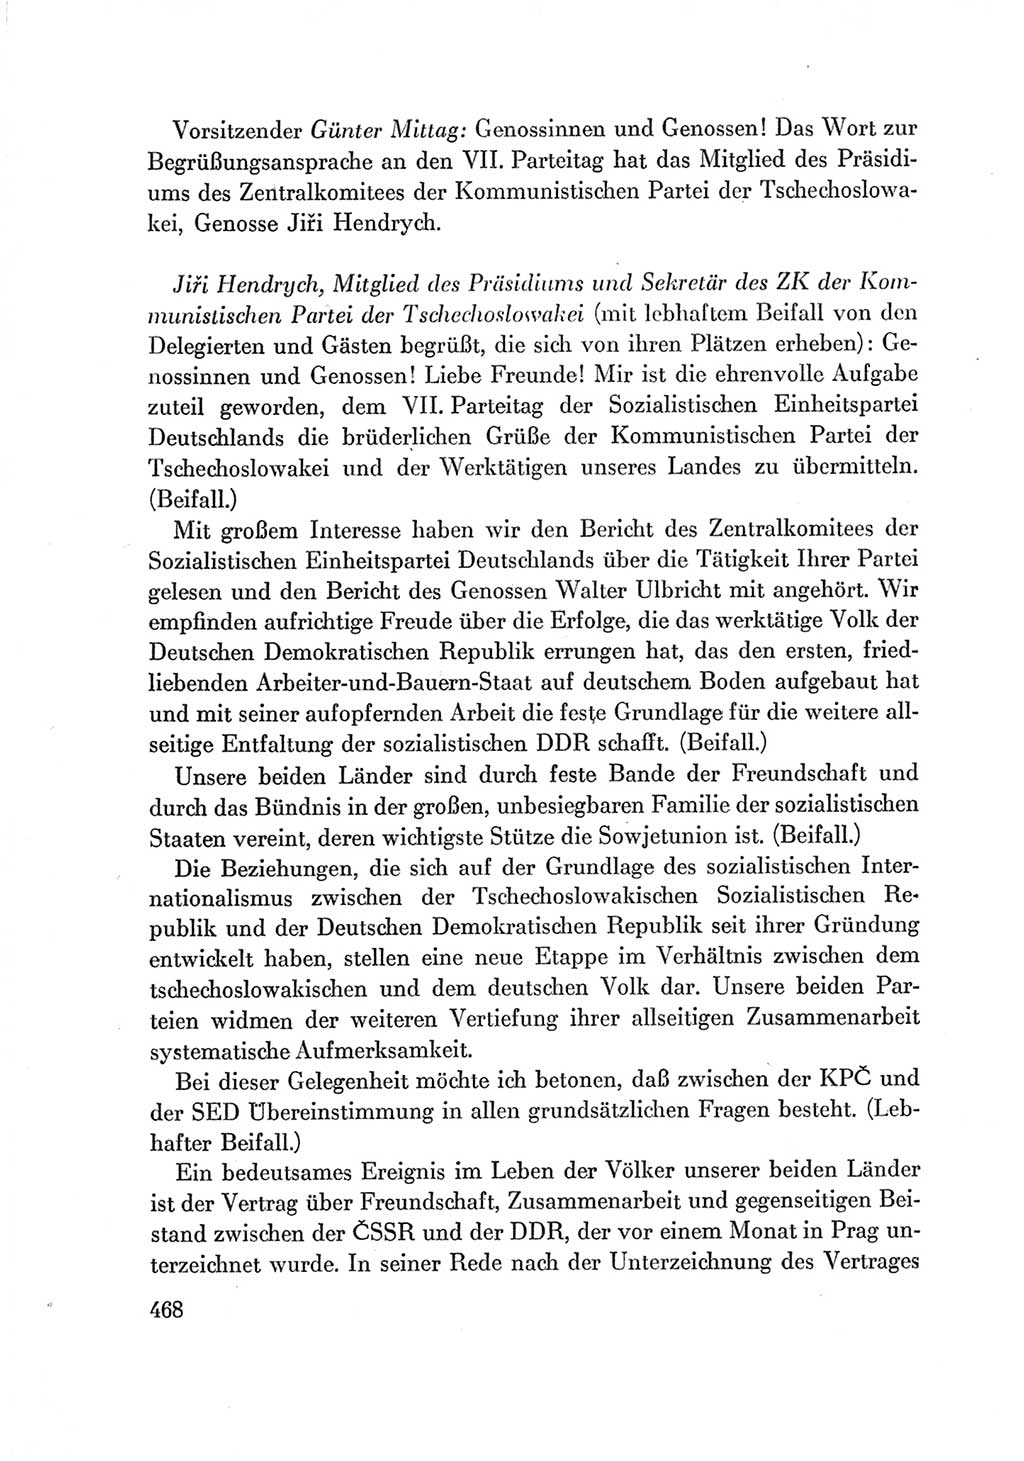 Protokoll der Verhandlungen des Ⅶ. Parteitages der Sozialistischen Einheitspartei Deutschlands (SED) [Deutsche Demokratische Republik (DDR)] 1967, Band Ⅰ, Seite 468 (Prot. Verh. Ⅶ. PT SED DDR 1967, Bd. Ⅰ, S. 468)